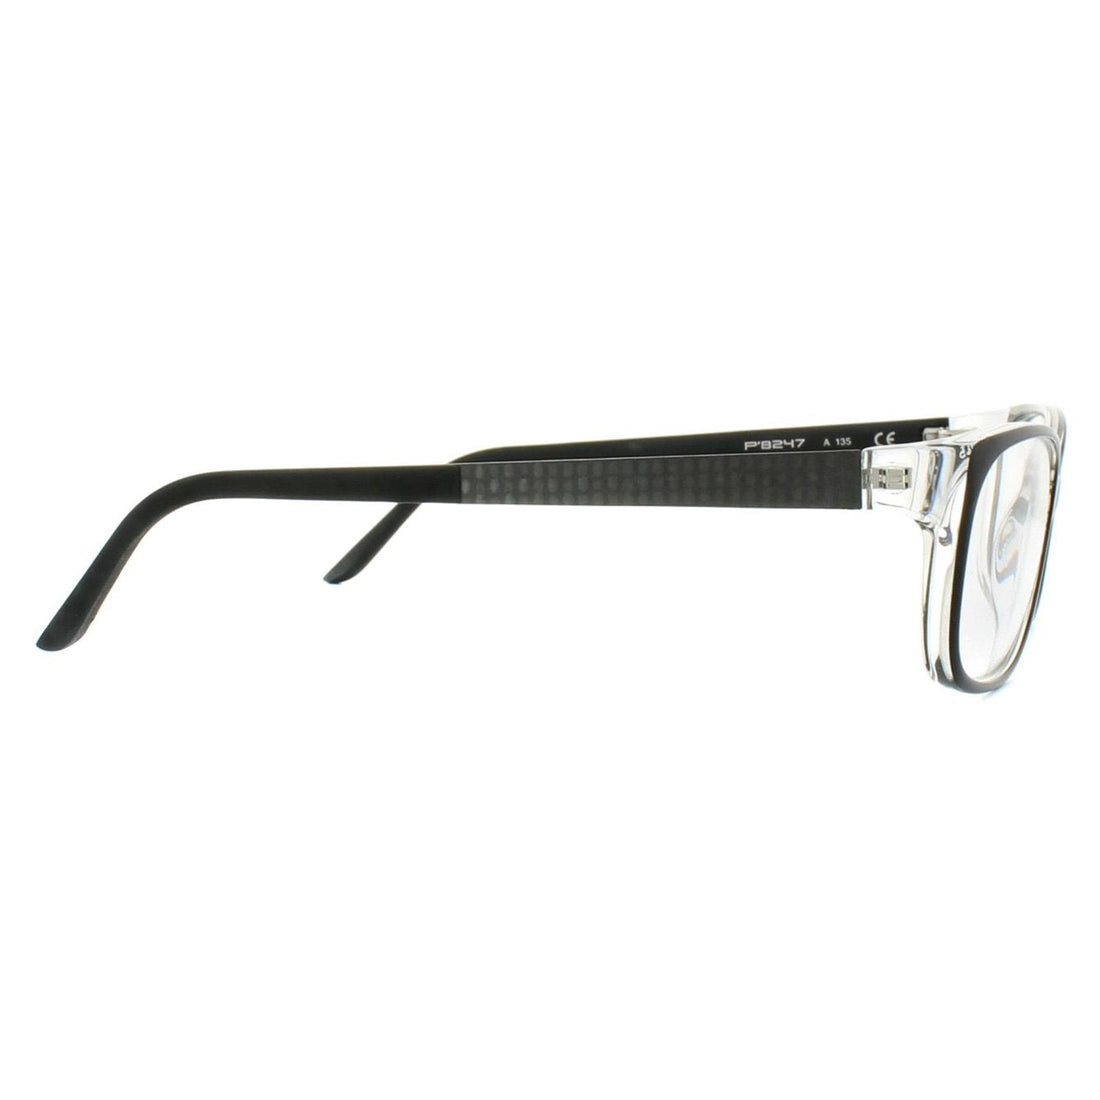 Porsche Design P8247 Glasses Frames